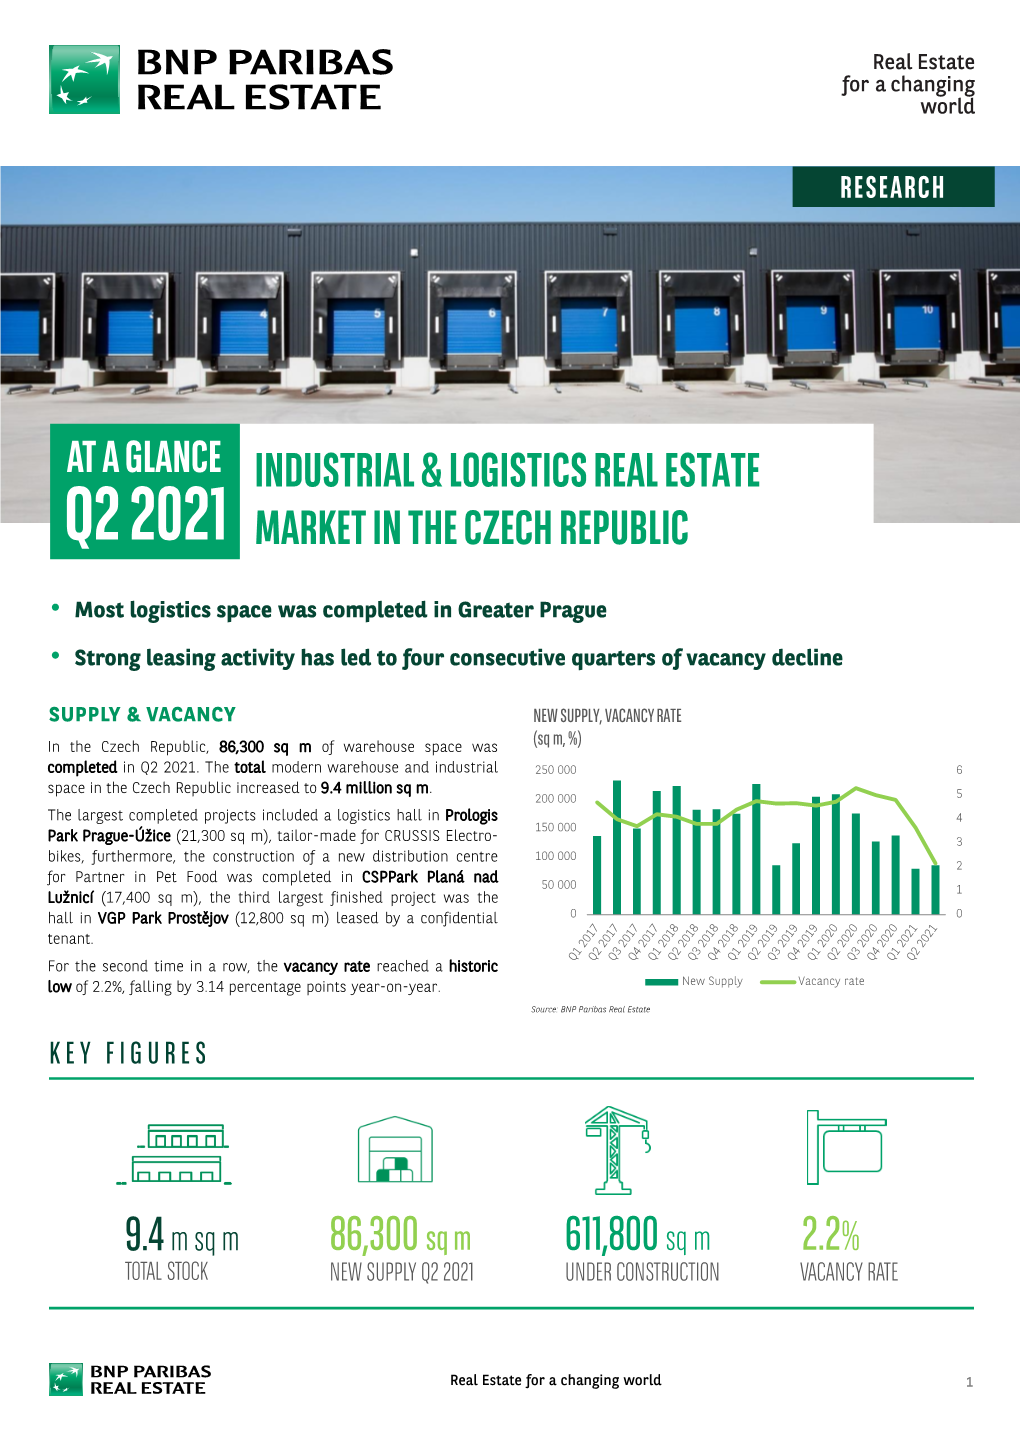 Q2 2021 Market in the Czech Republic